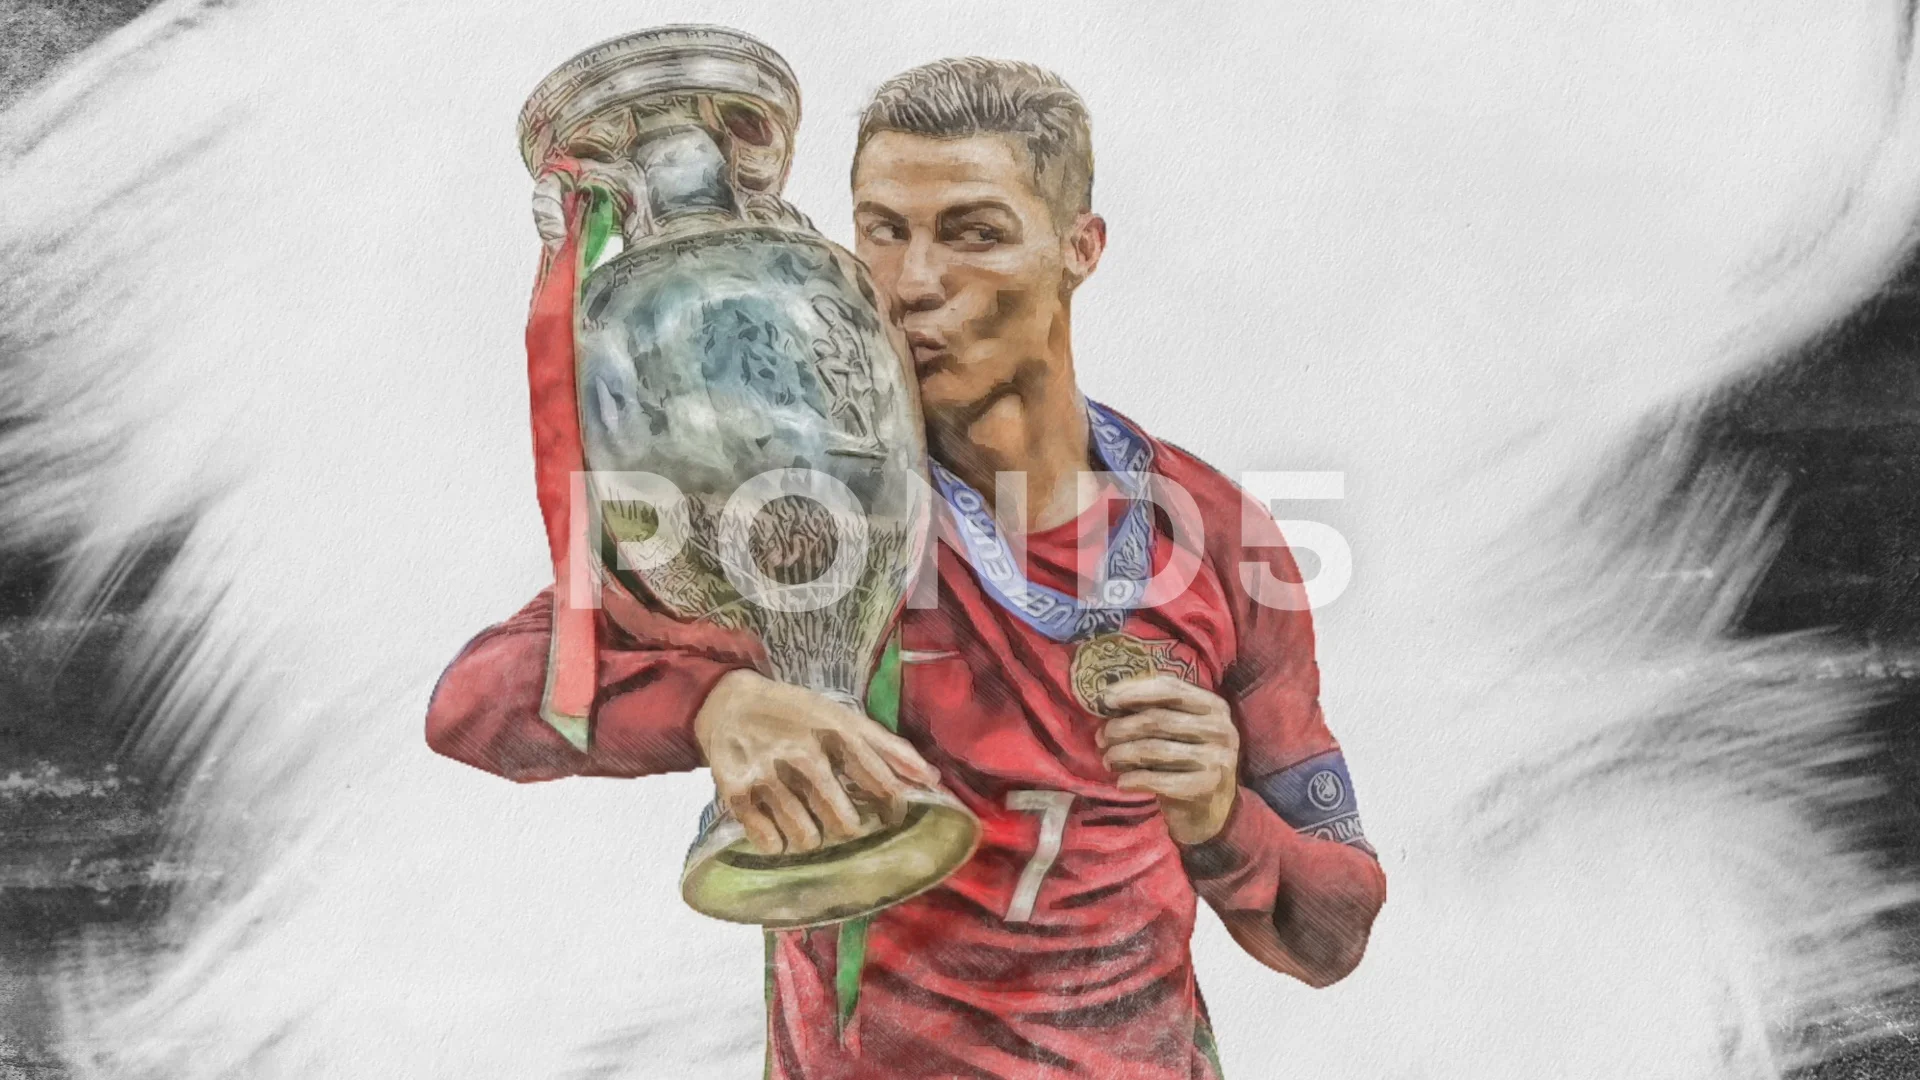 Portrait Drawing Cristiano Ronaldo 42cmx30cm - Etsy UK-saigonsouth.com.vn